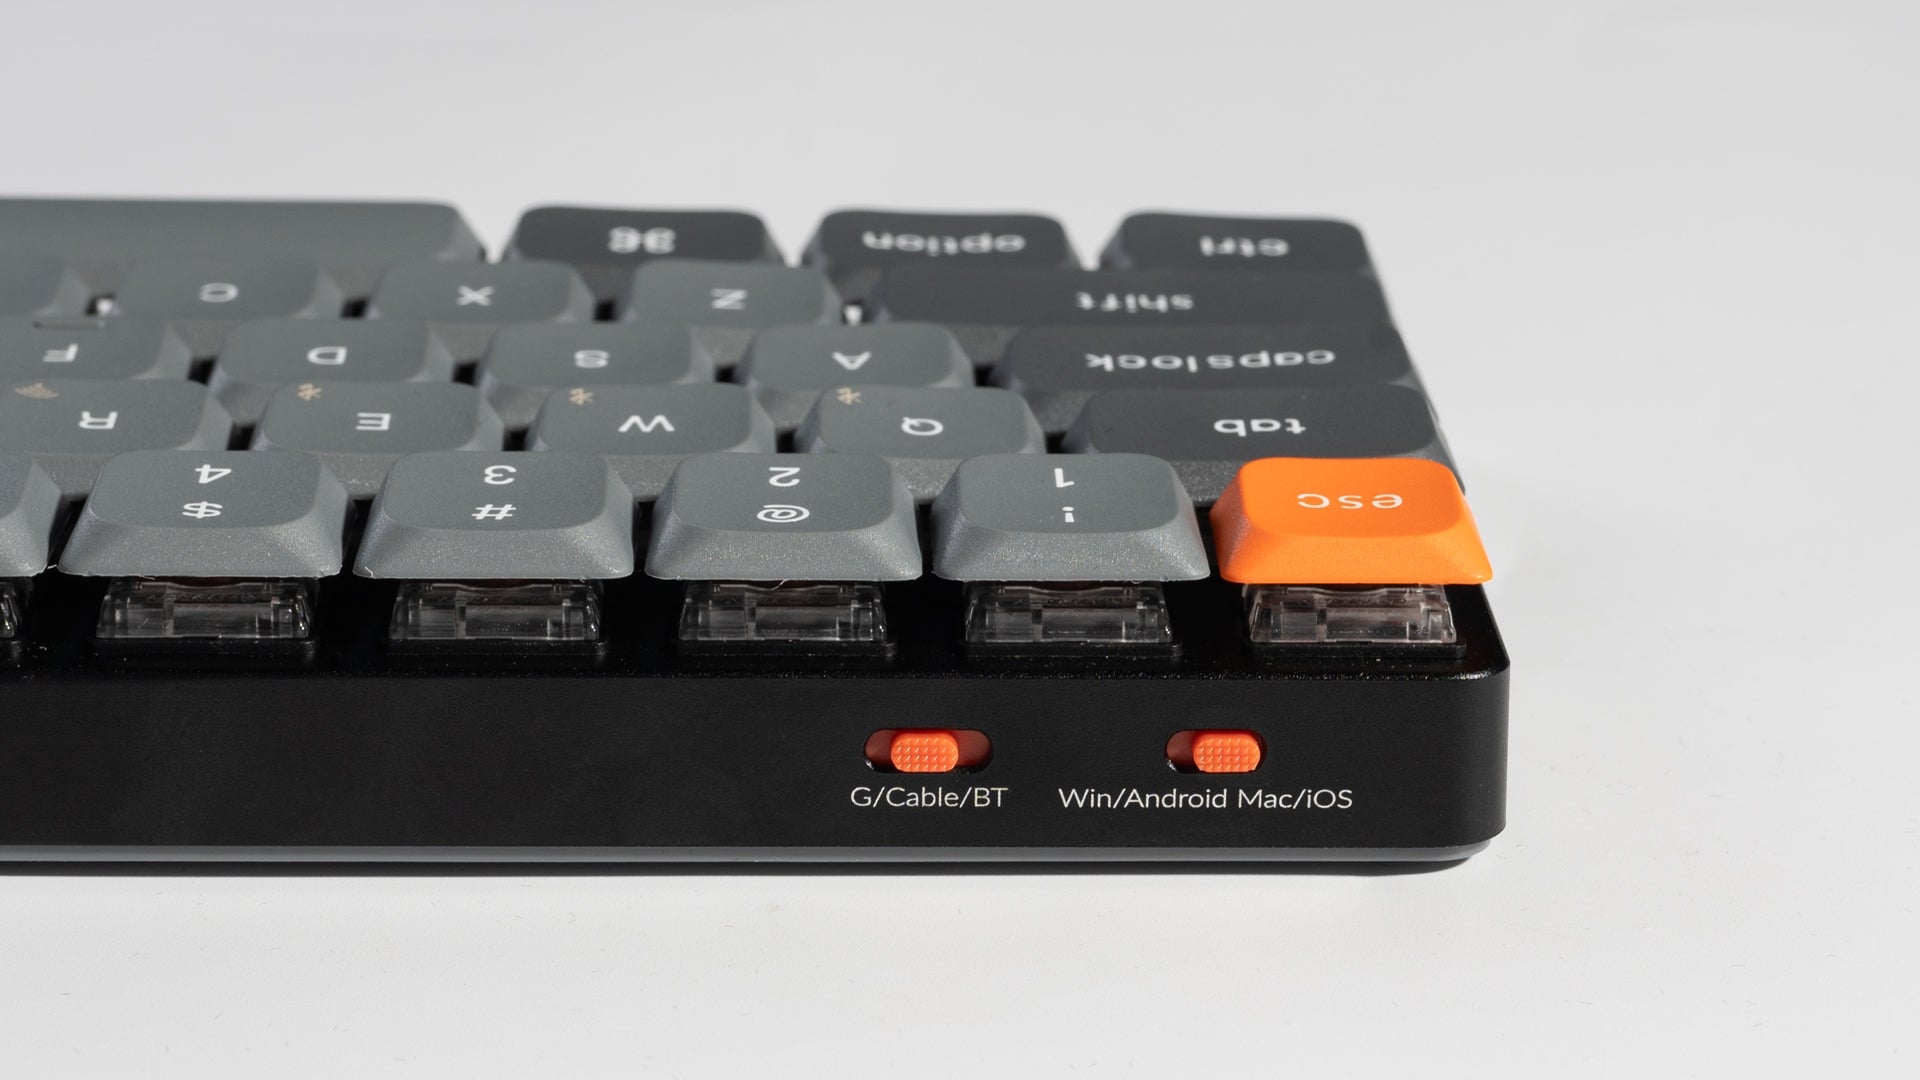 Keychron K7 Max Wireless Mechanical Keyboard